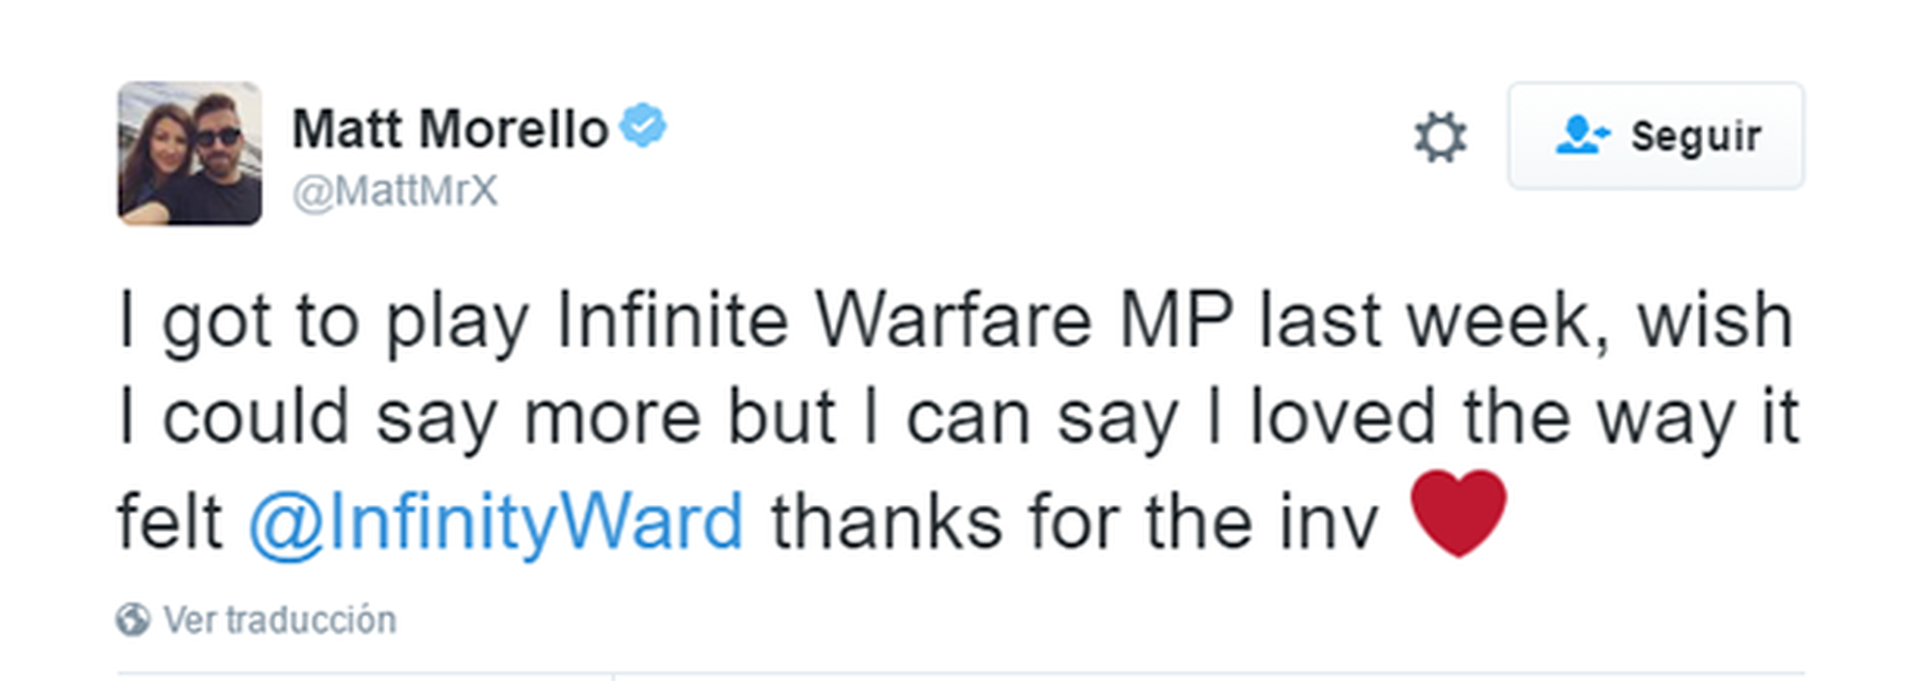 Call of Duty: Infinite Warfare - Opiniones en Twitter